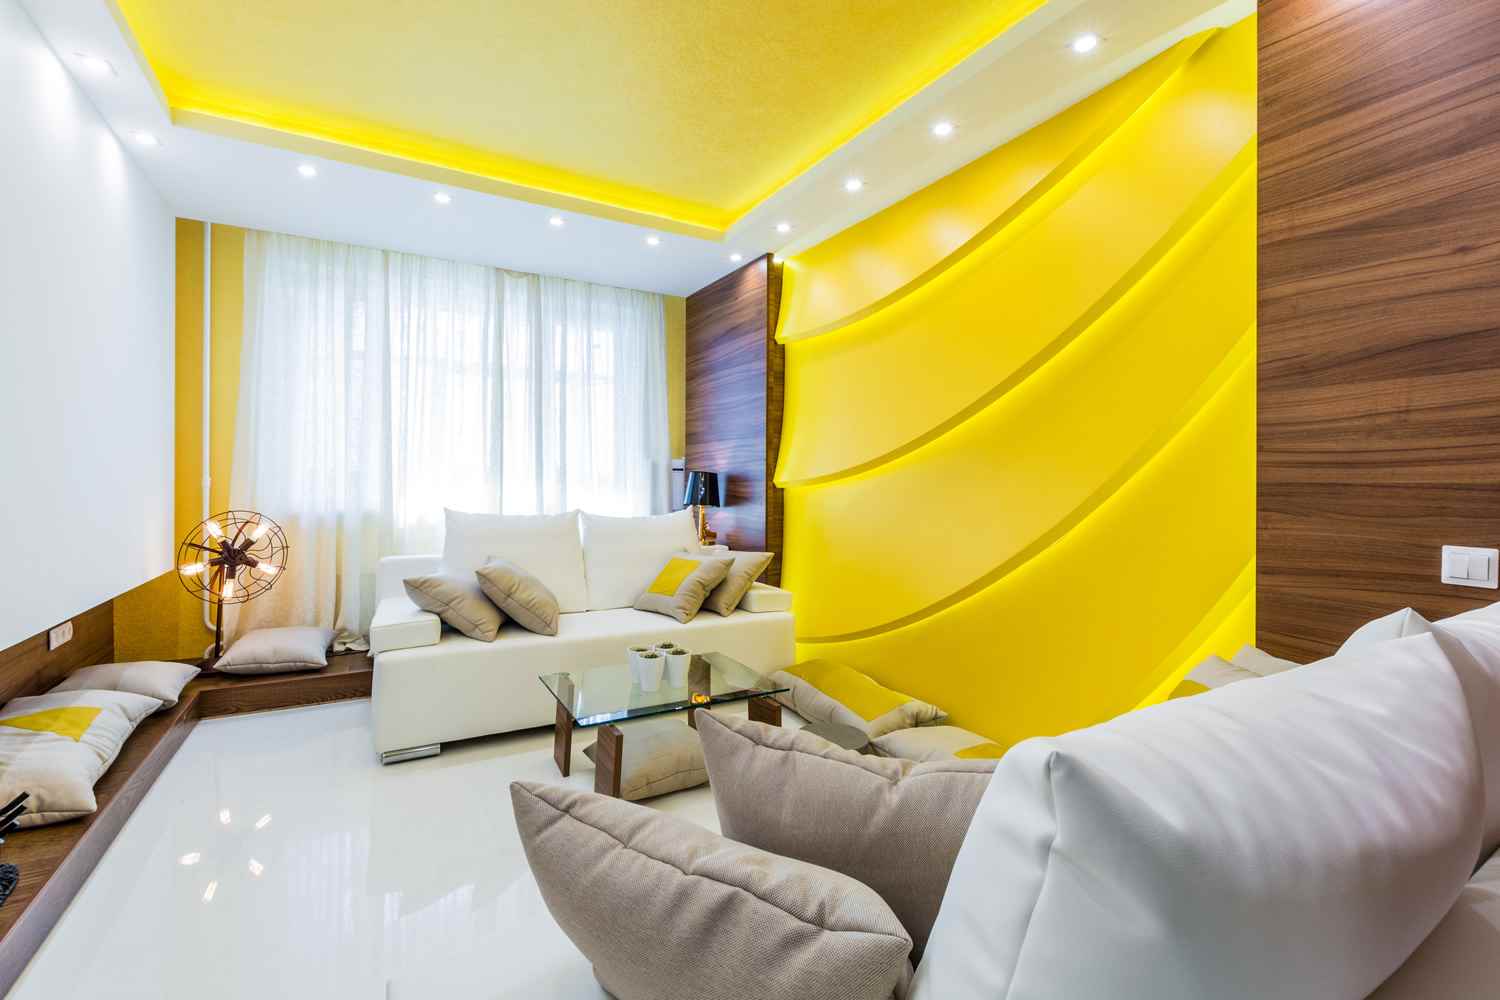 l'idea di utilizzare il giallo brillante nel design dell'appartamento